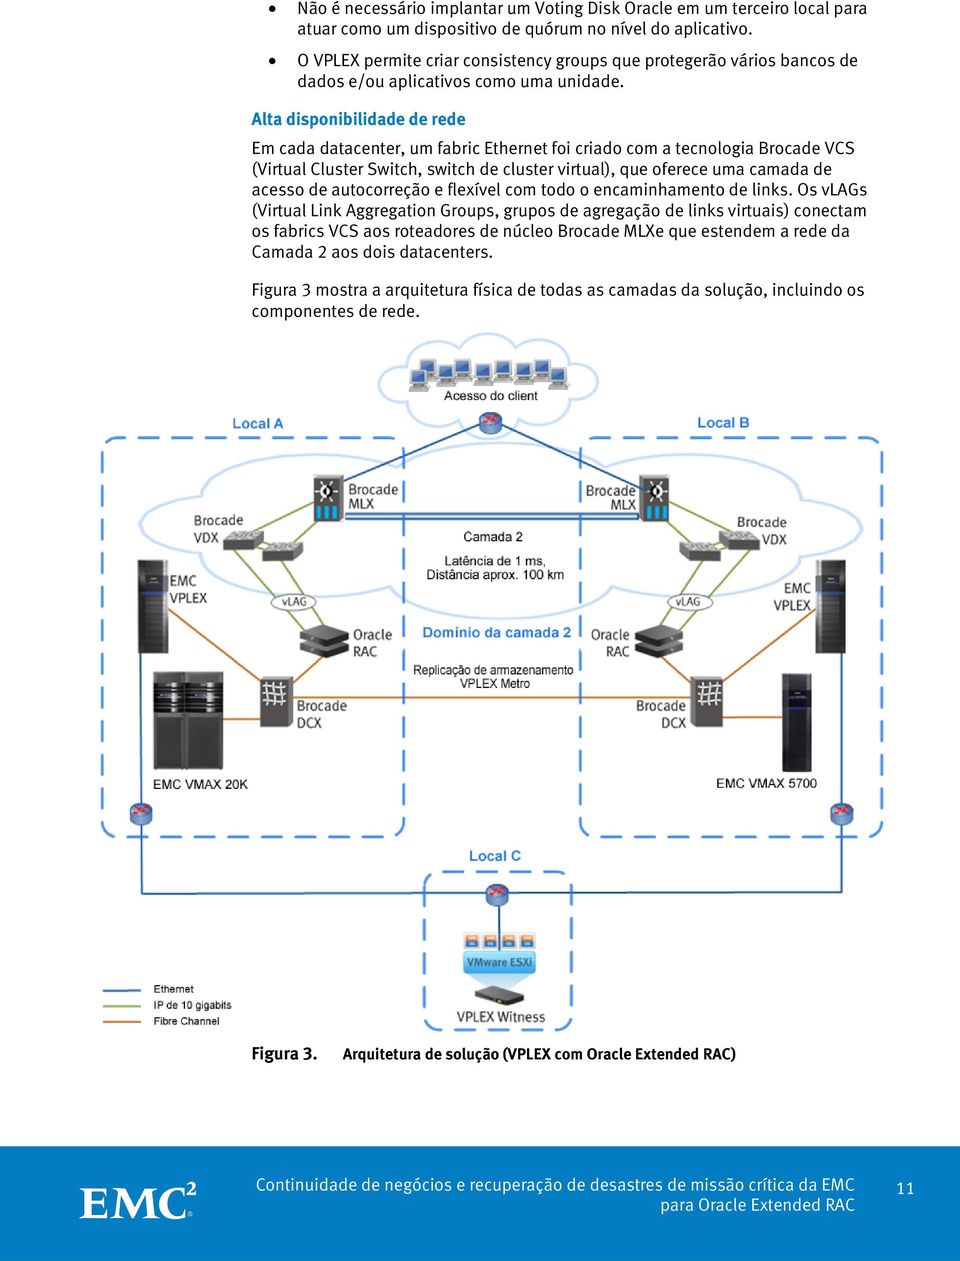 Alta disponibilidade de rede Em cada datacenter, um fabric Ethernet foi criado com a tecnologia Brocade VCS (Virtual Cluster Switch, switch de cluster virtual), que oferece uma camada de acesso de